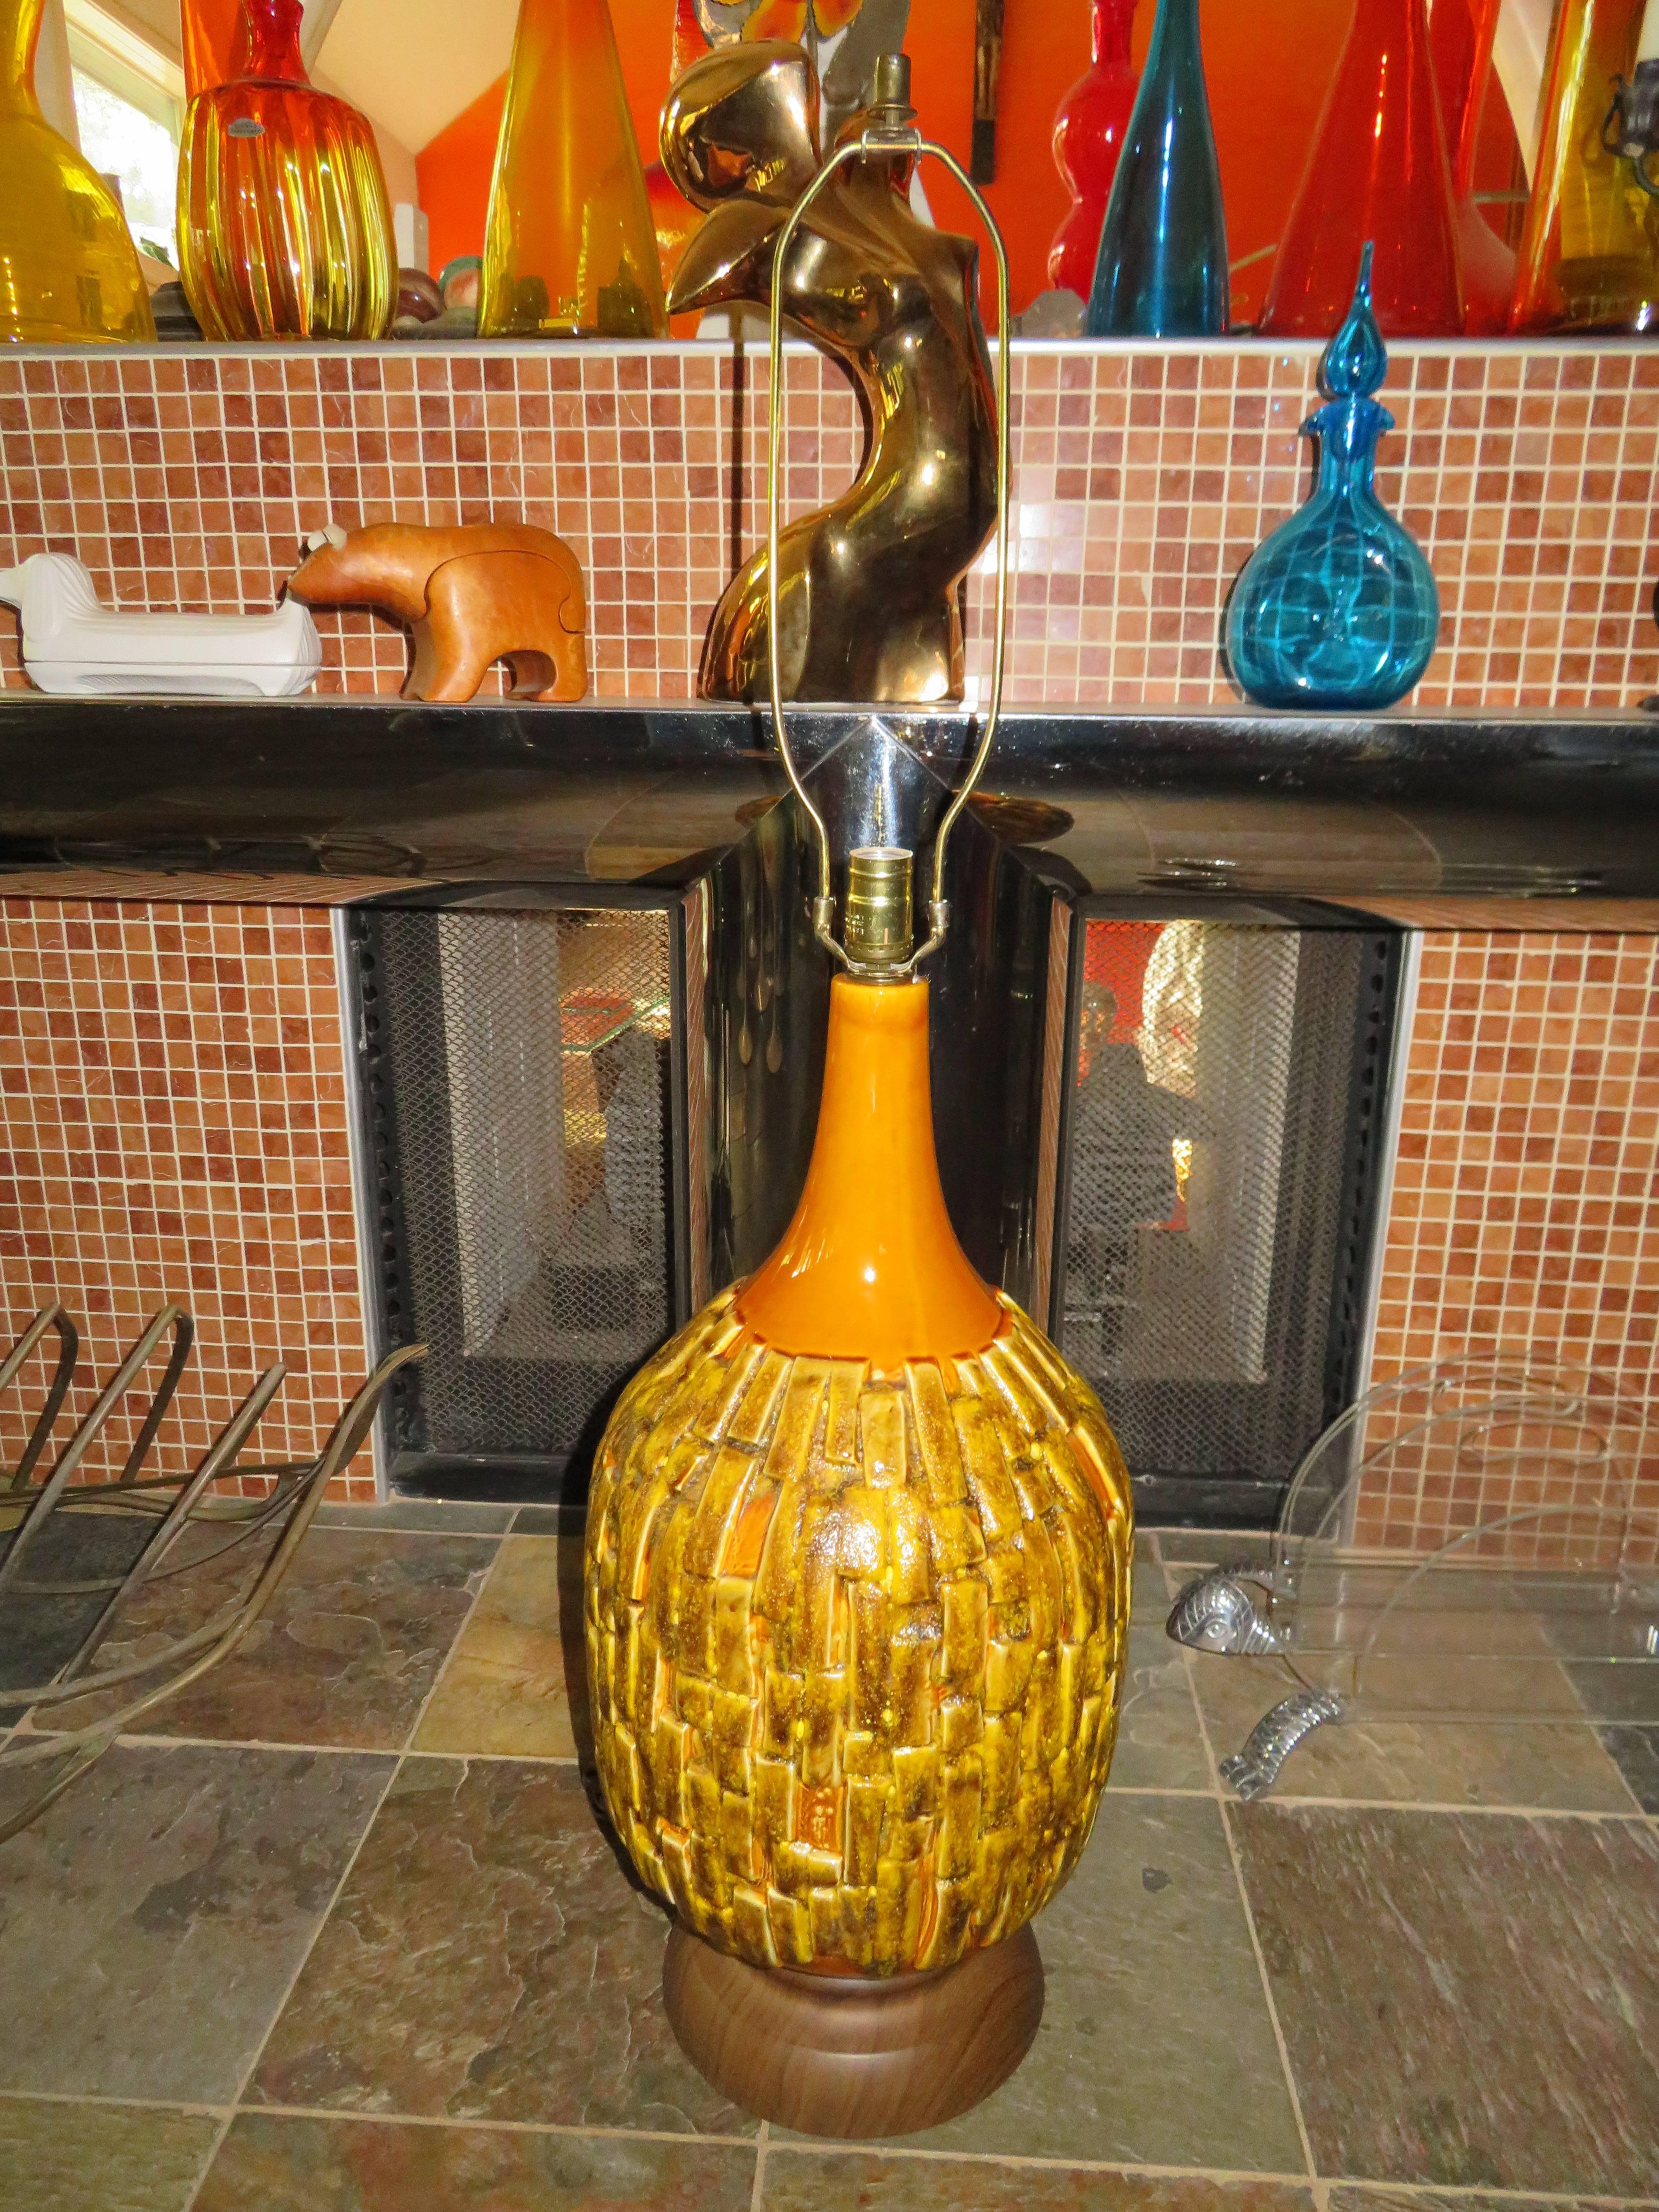 Fabuleuse lampe Brutalist à grande échelle texturée avec une merveilleuse glaçure dorée. Cette lampe a des tonnes de couches texturées et épaisses avec une superbe couleur orange dorée et des touches de chocolat partout. Nous adorons la grande